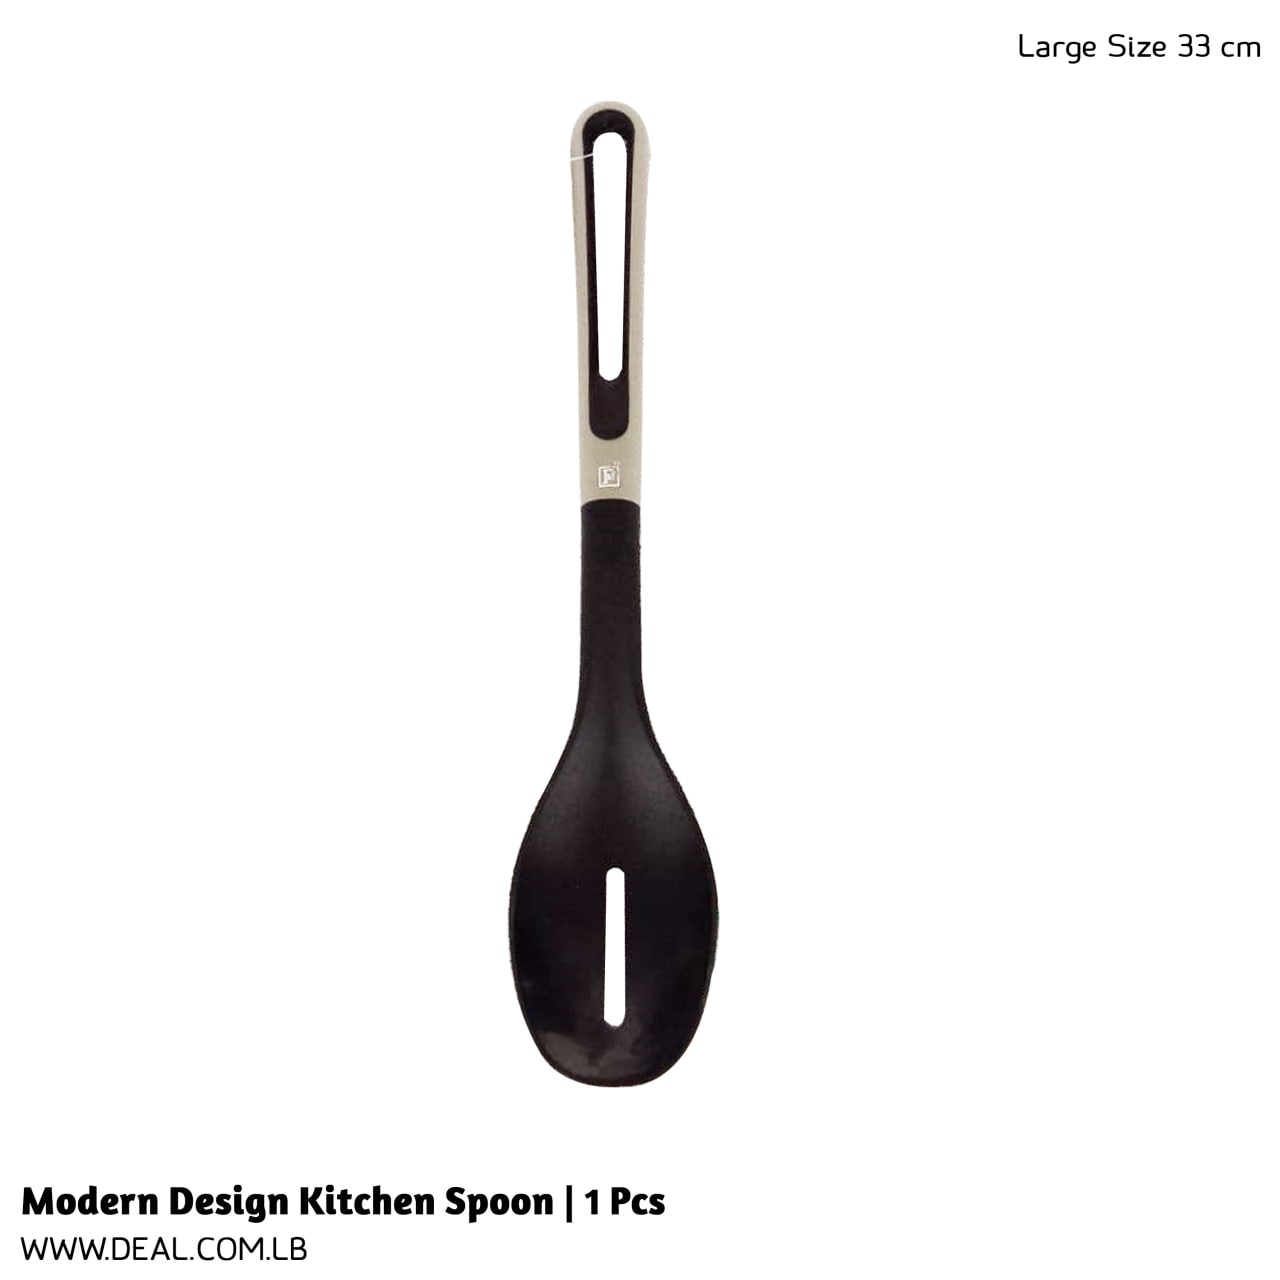 Modern Design Kitchen Spoon | 1 Pcs | 33cm